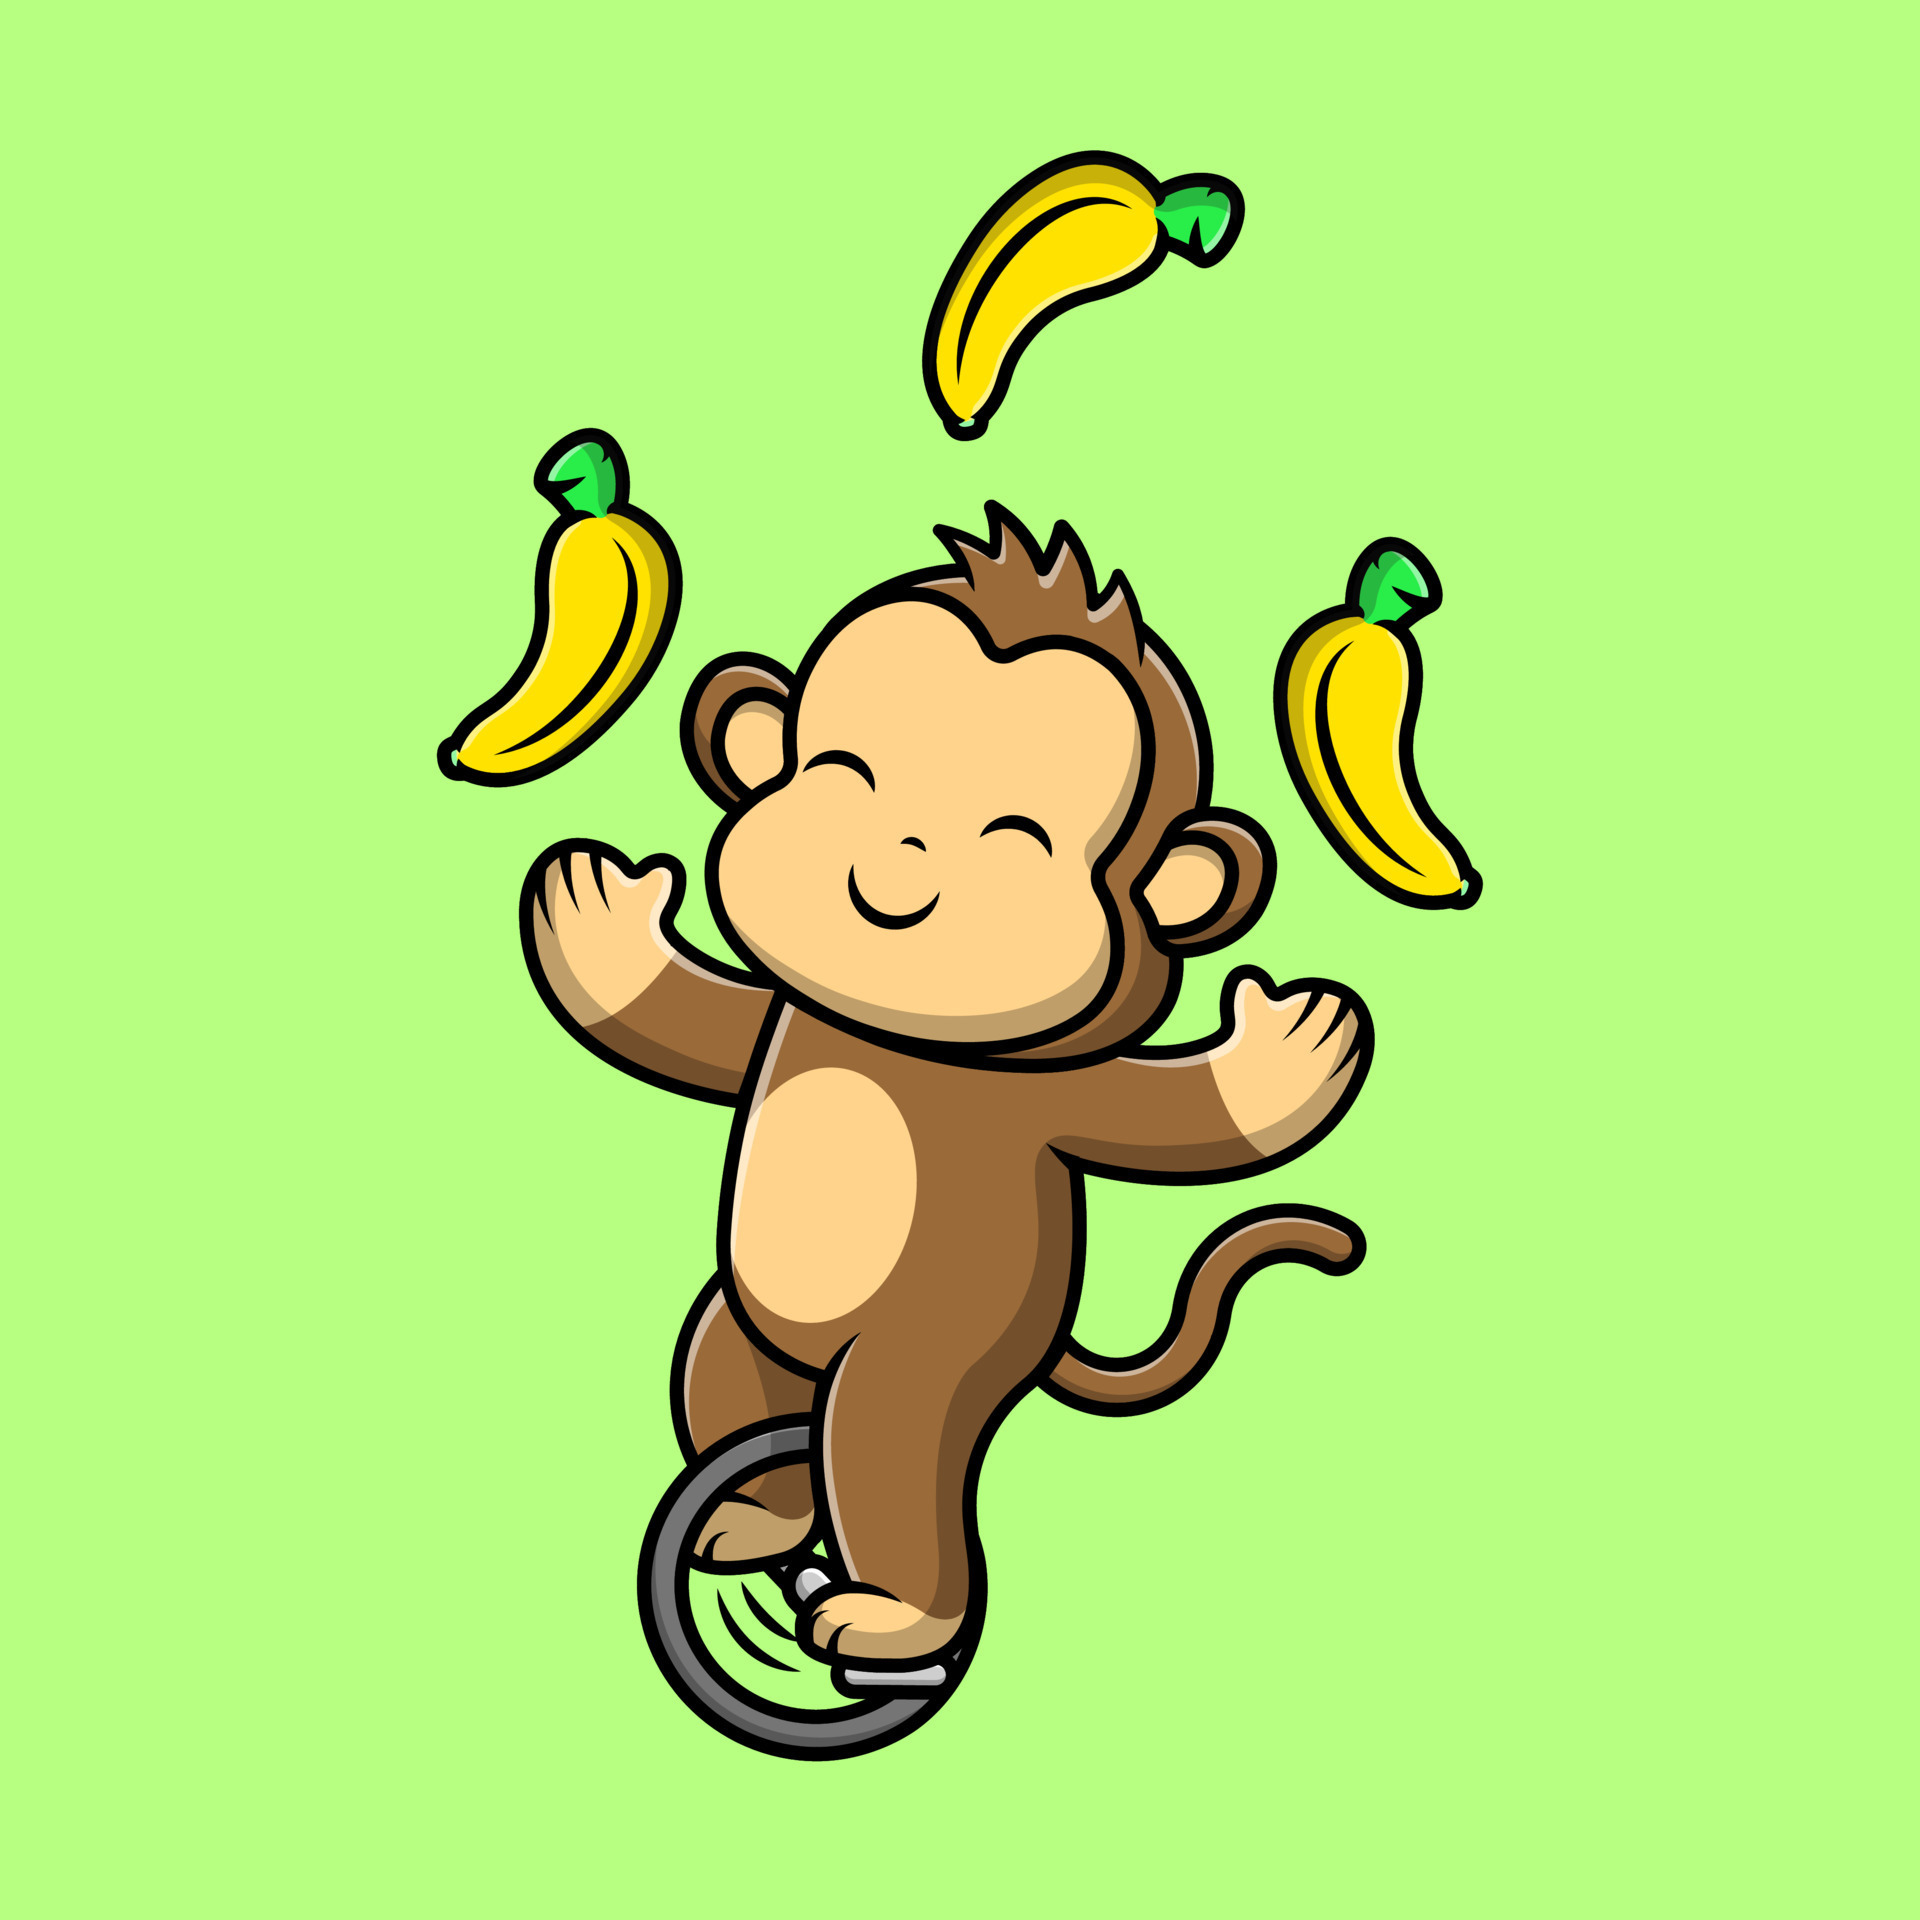 Projeto de jogo do macaco ilustração do vetor. Ilustração de